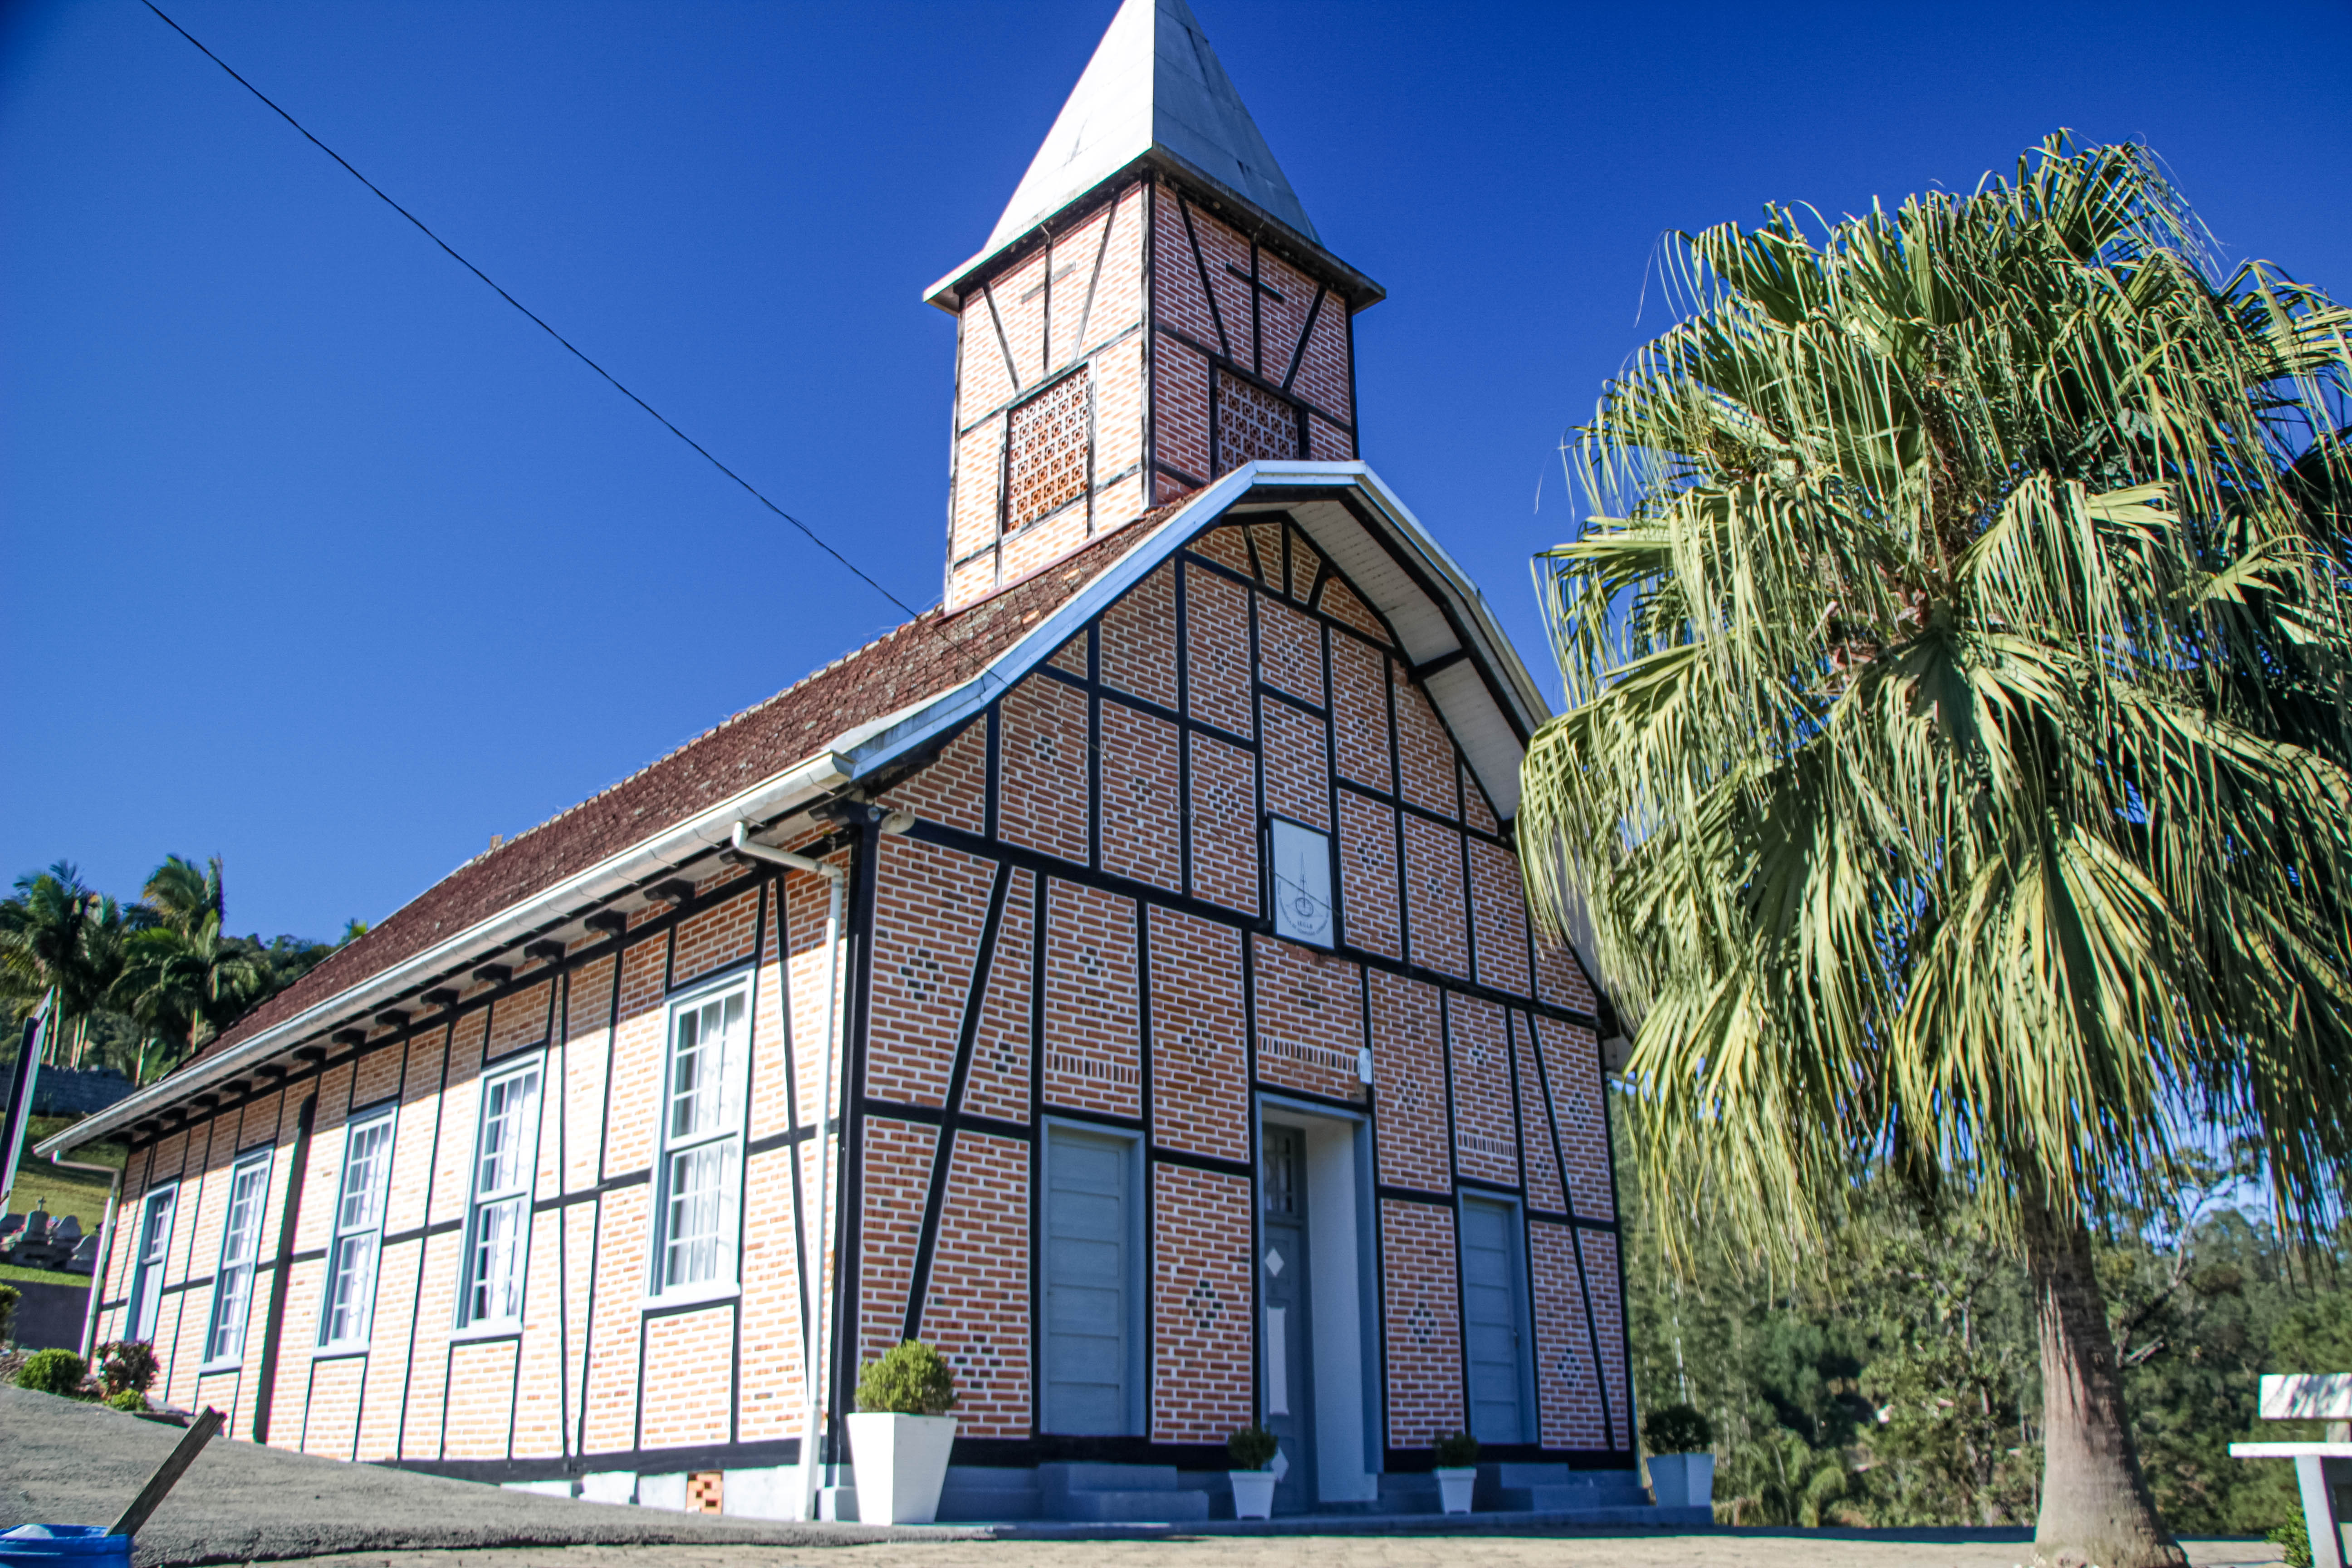 BENEDITO NOVO, Igreja Evangélica de Confissão Luterana